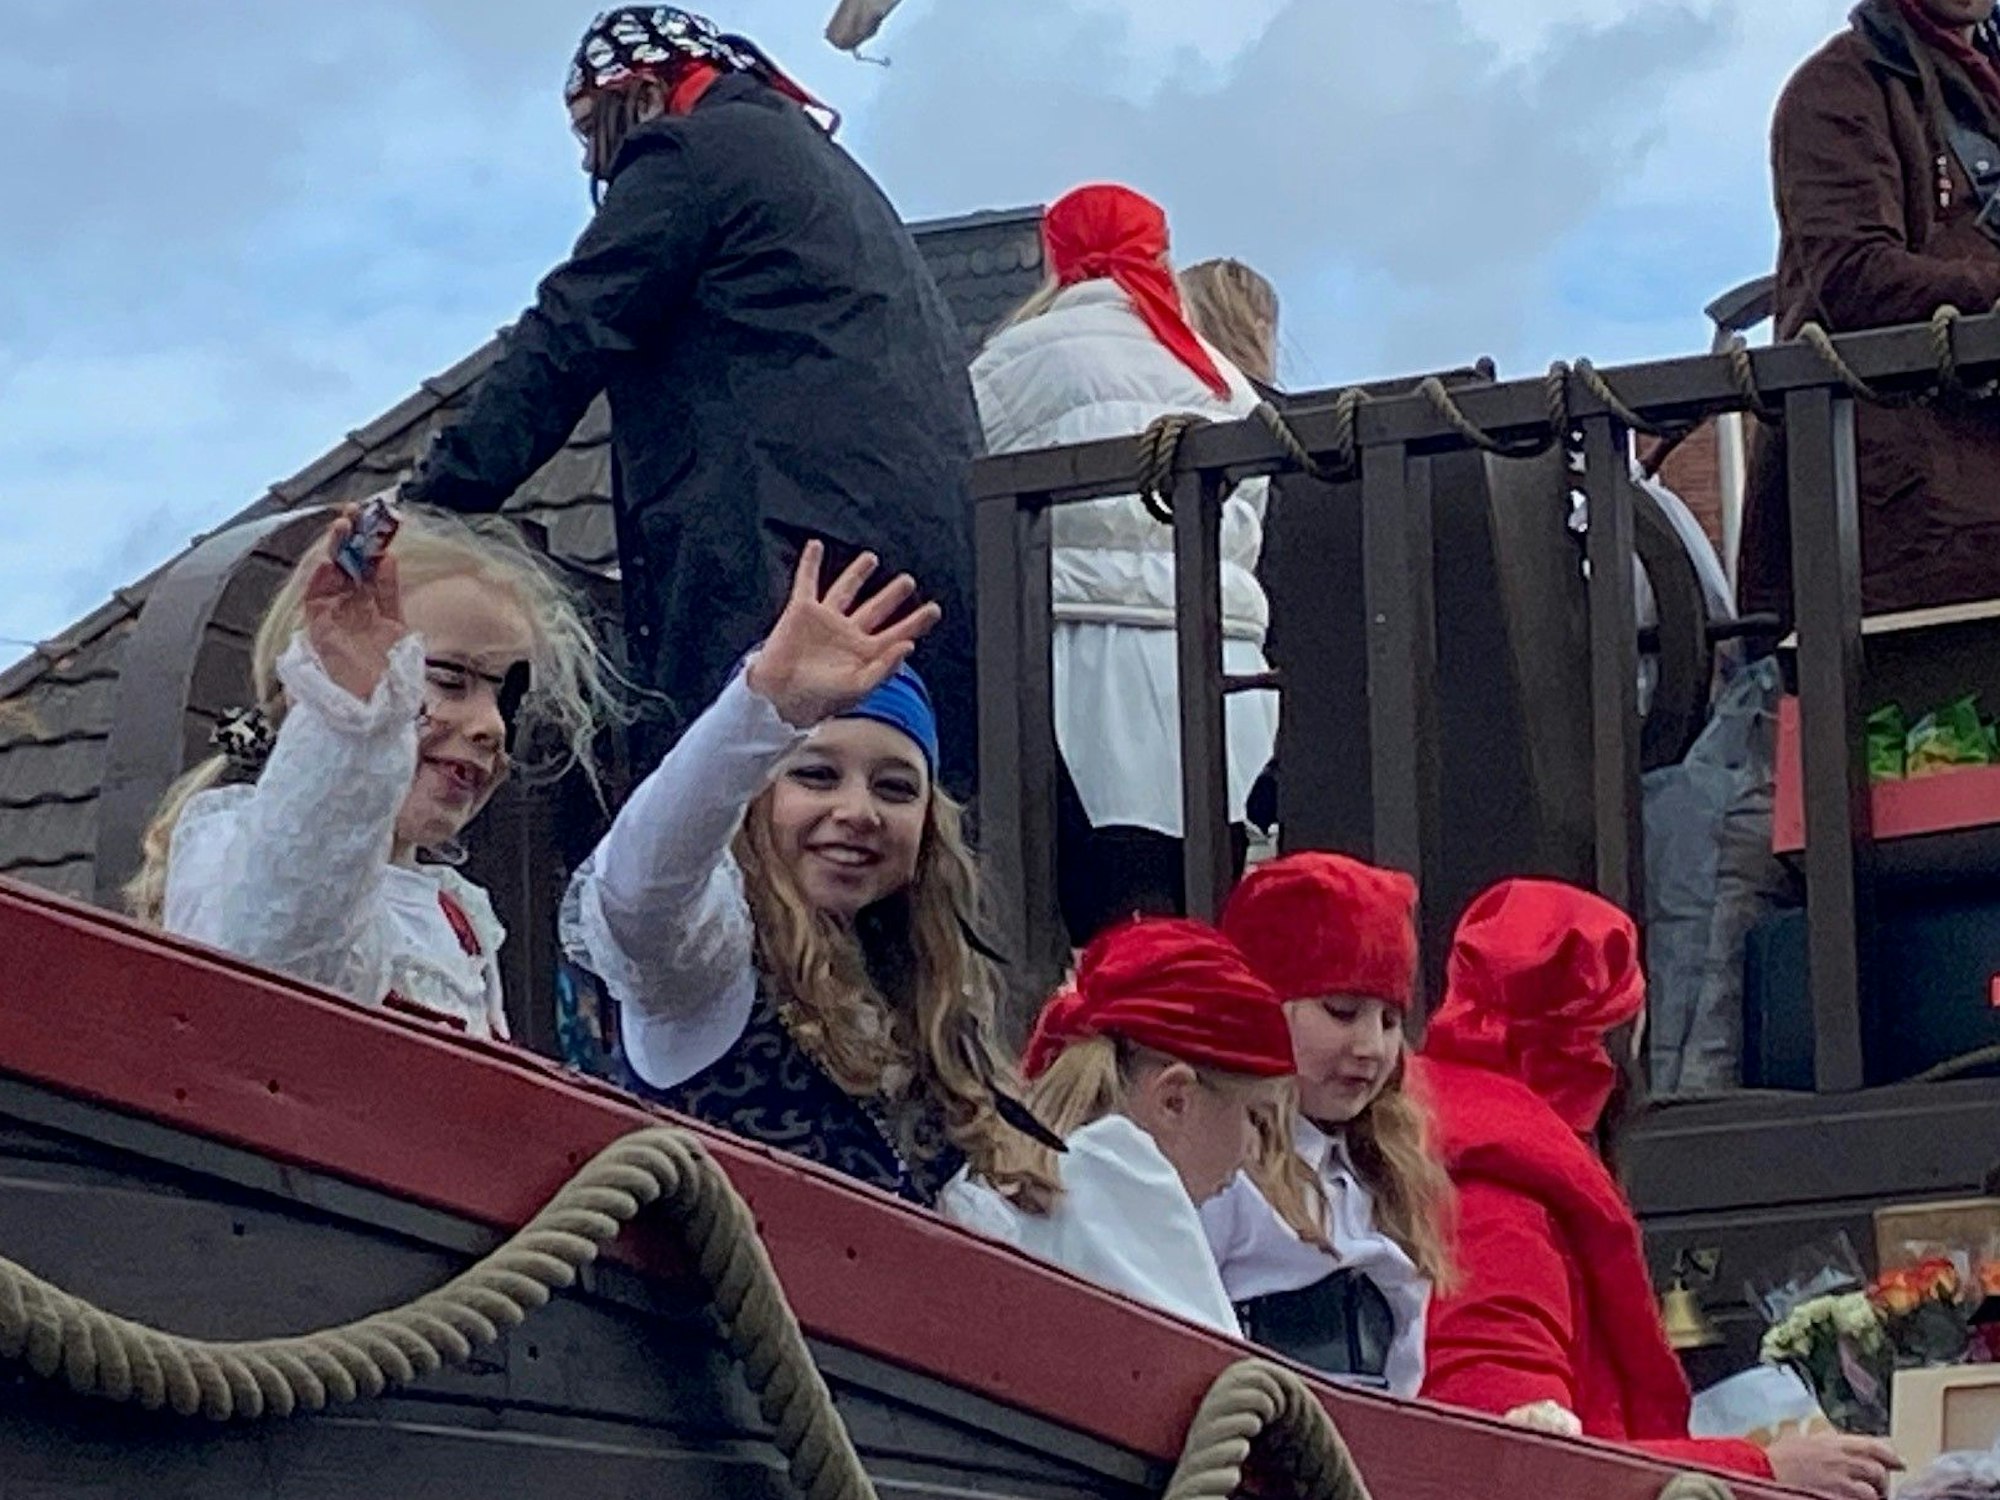 Auf dem Bild sind als Piraten kostümierte Mädchen zu sehen.